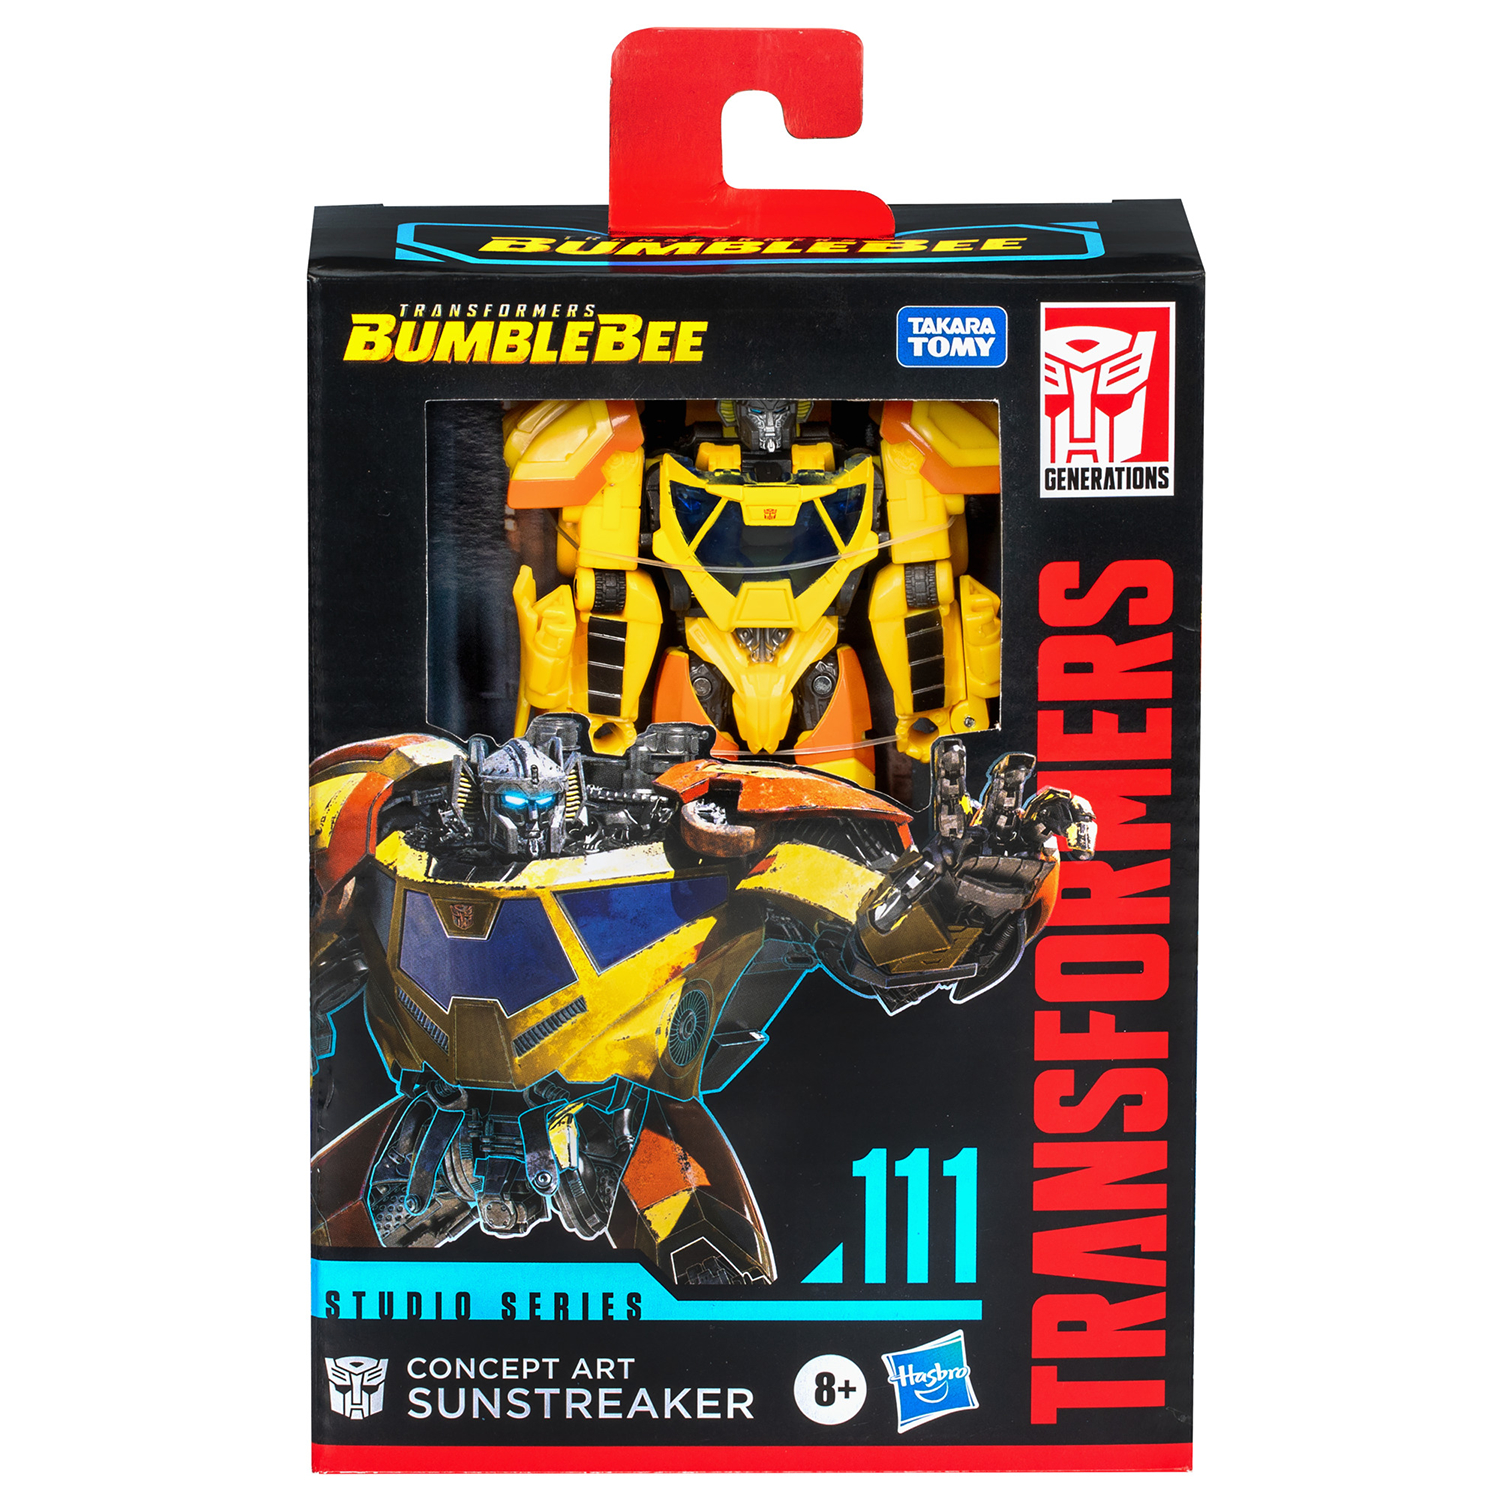 Transformers Studio Series Deluxe Sunstreaker (Bumblebee) Action Figure